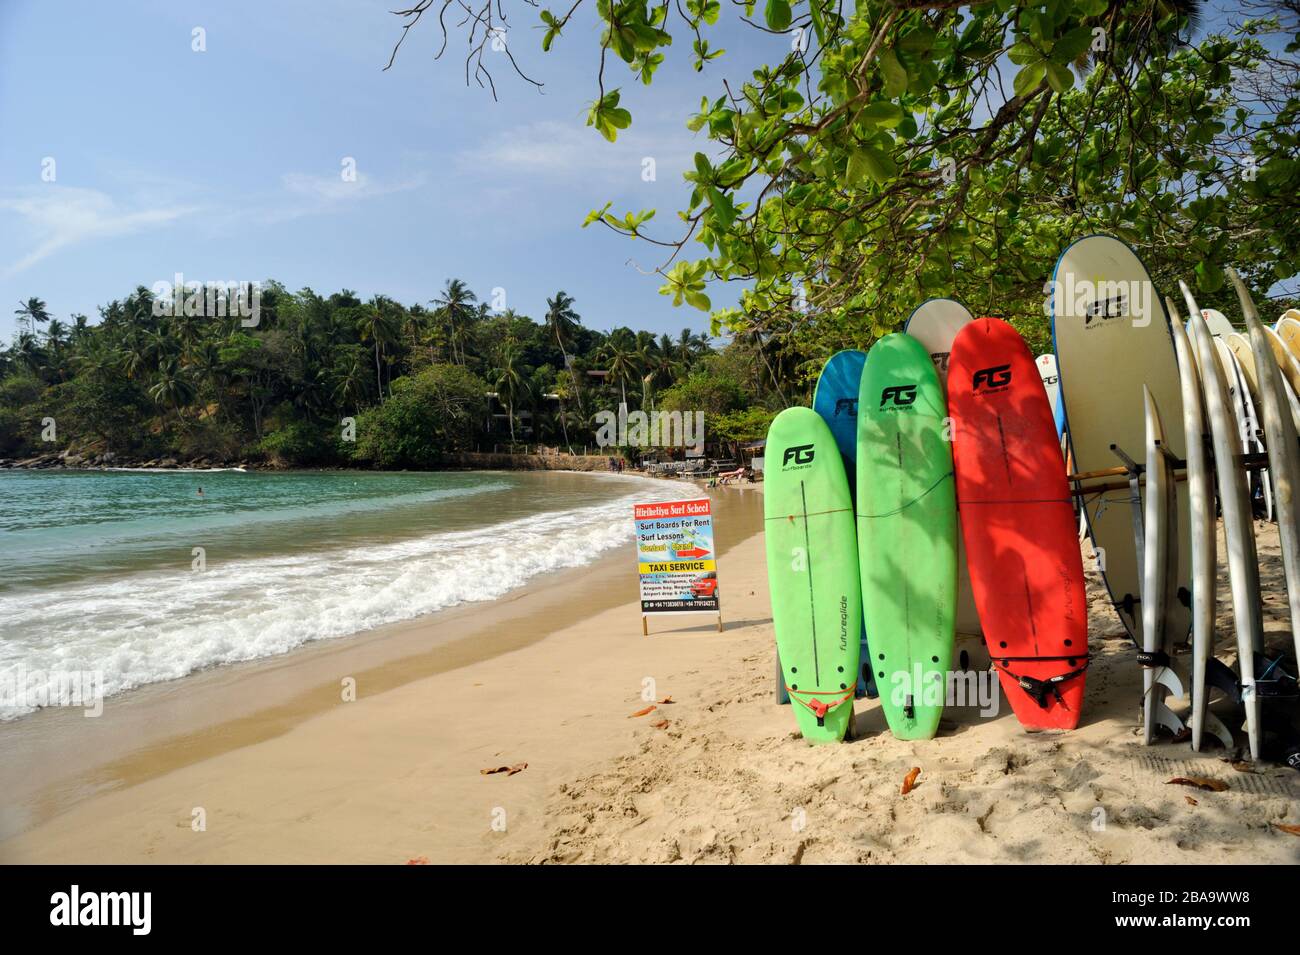 Sri Lanka, Hiriketiya beach, surf rental Stock Photo